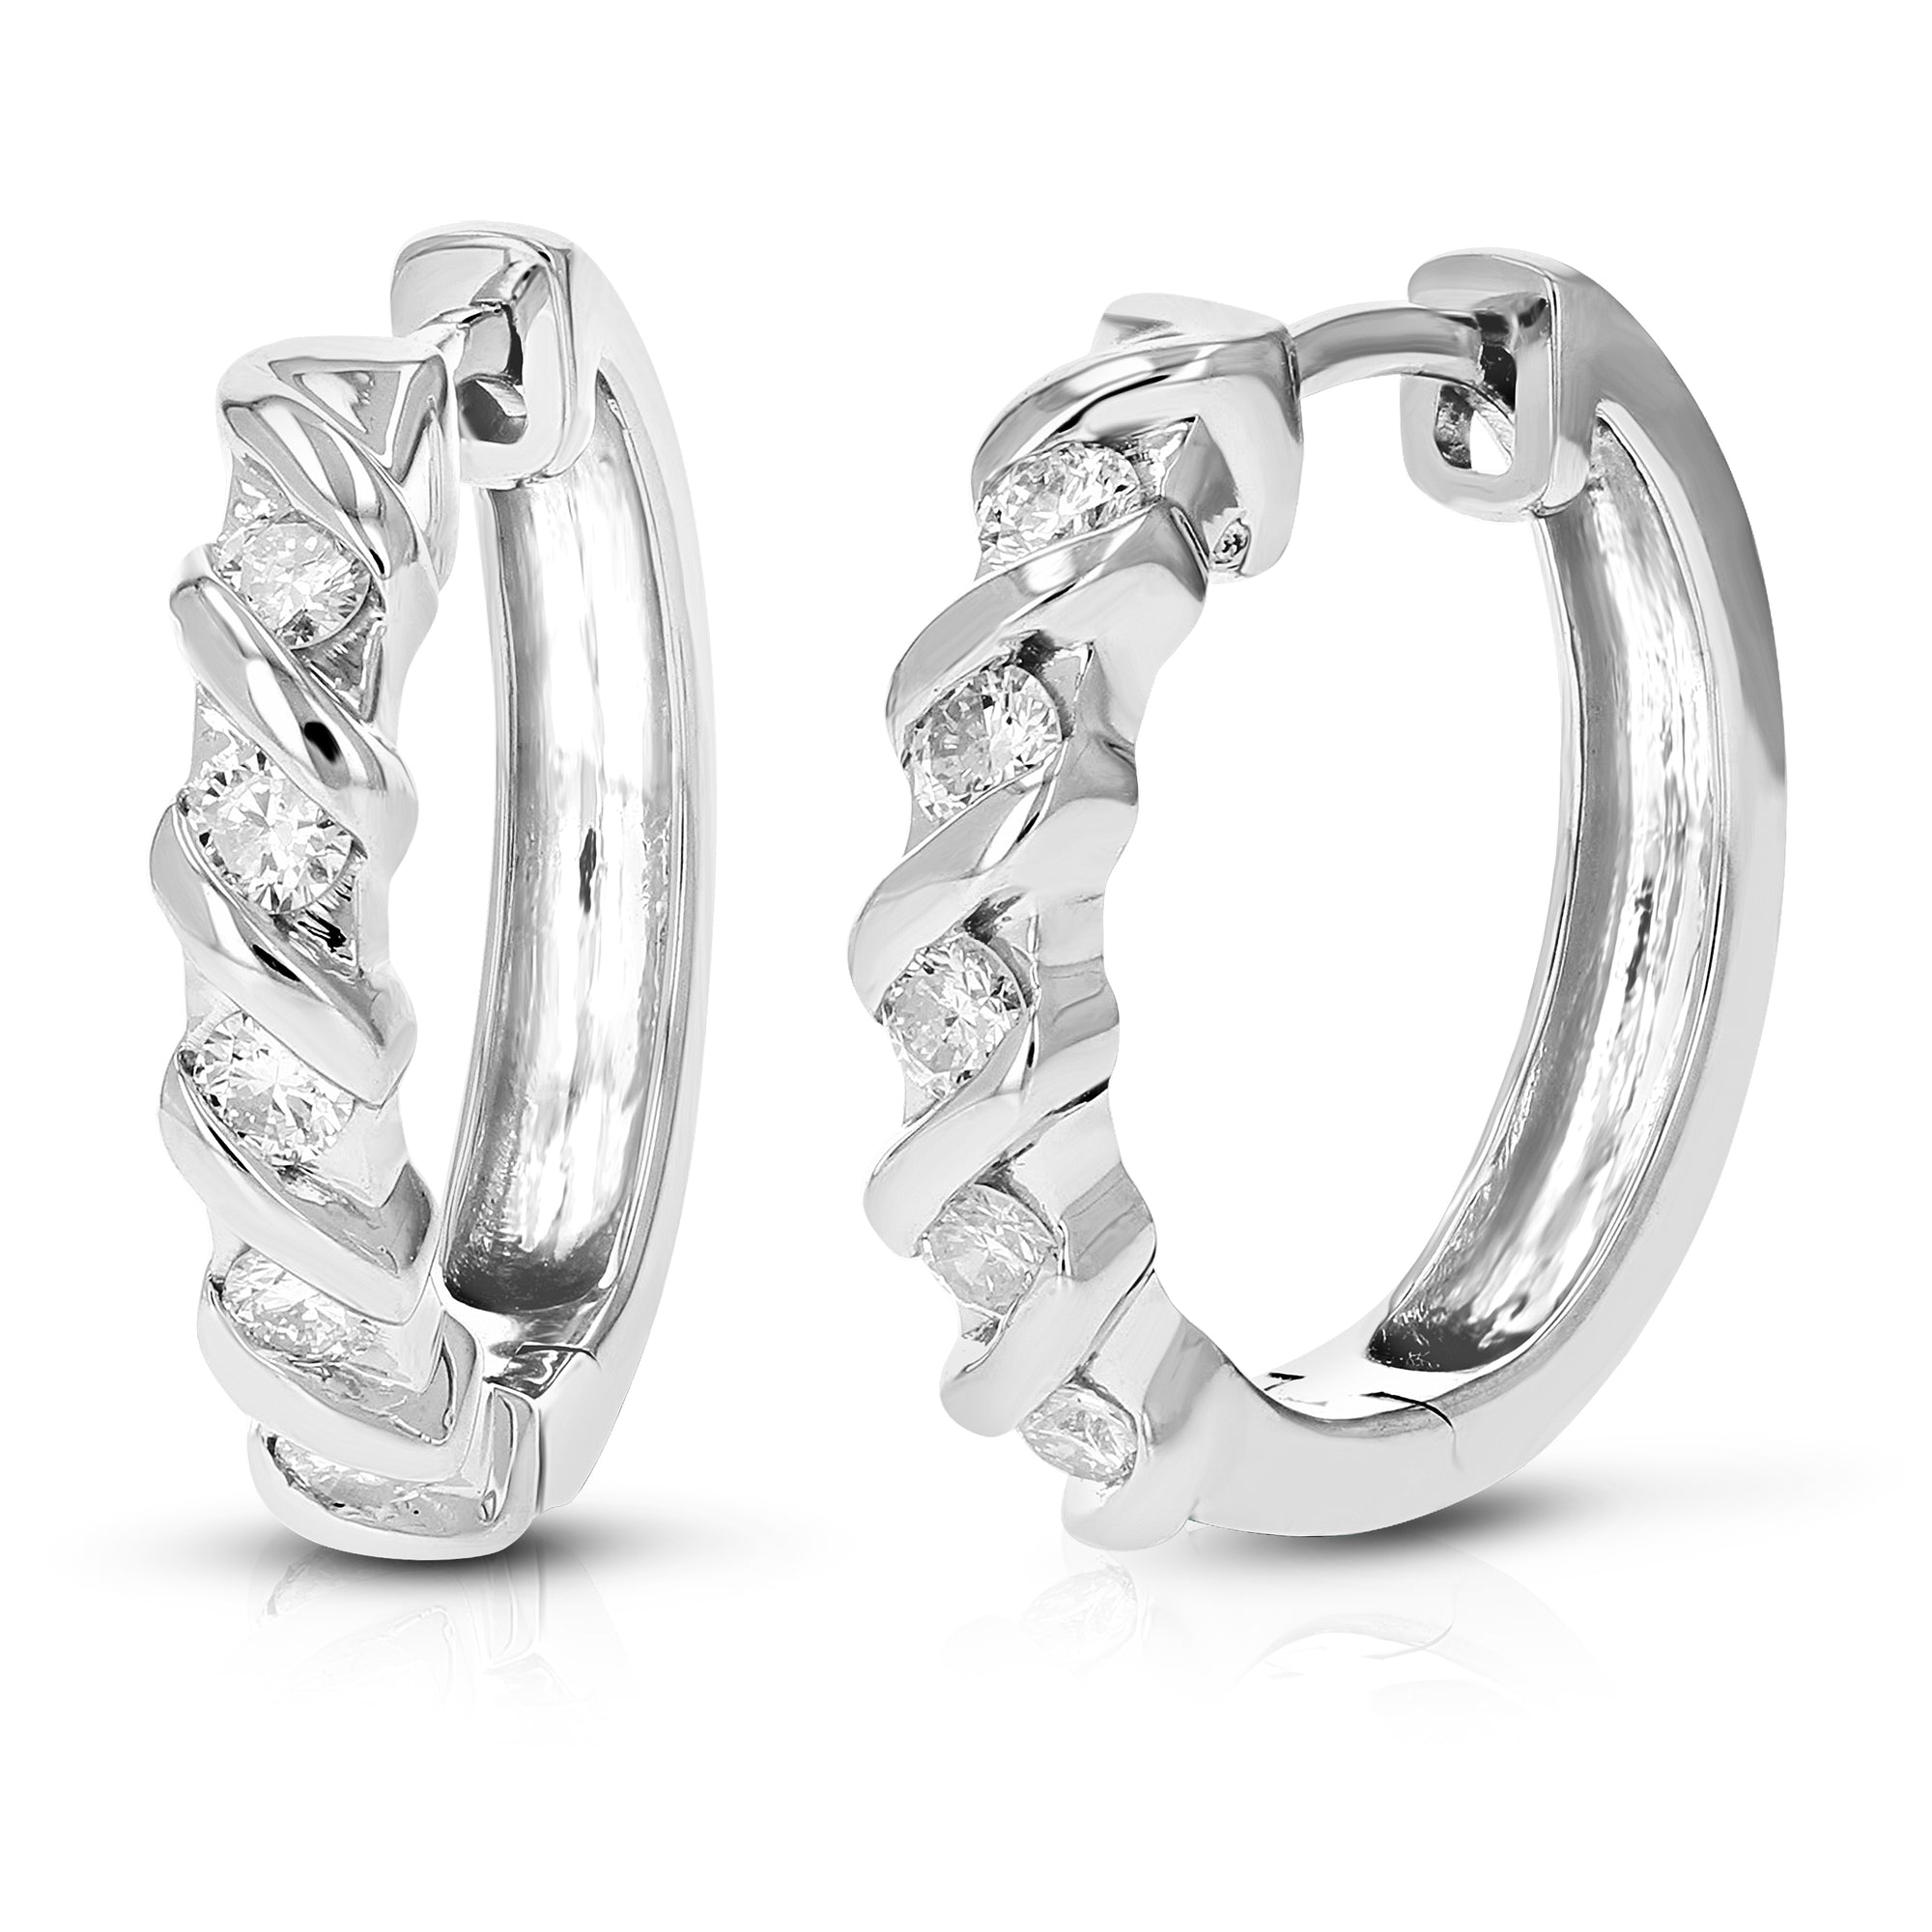 1/2 cttw Diamond Hoop Earrings for Women, Round Lab Grown Diamond Earrings in .925 Sterling Silver, Channel Setting, 3/4 Inch